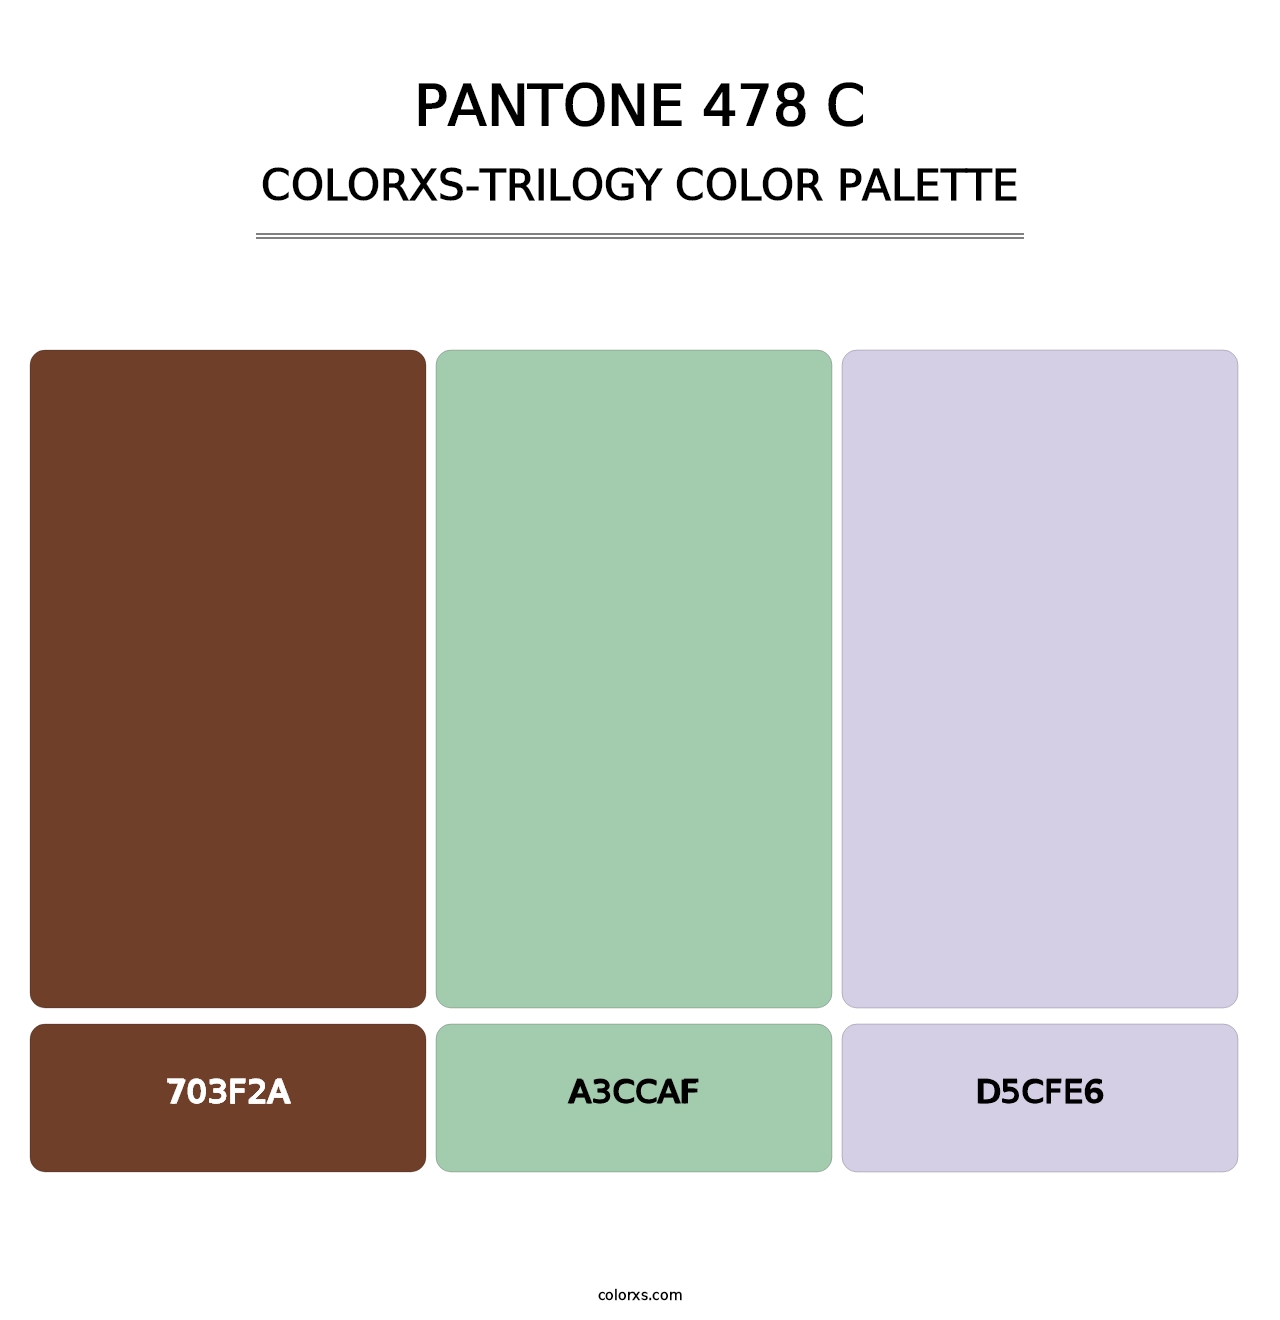 PANTONE 478 C - Colorxs Trilogy Palette